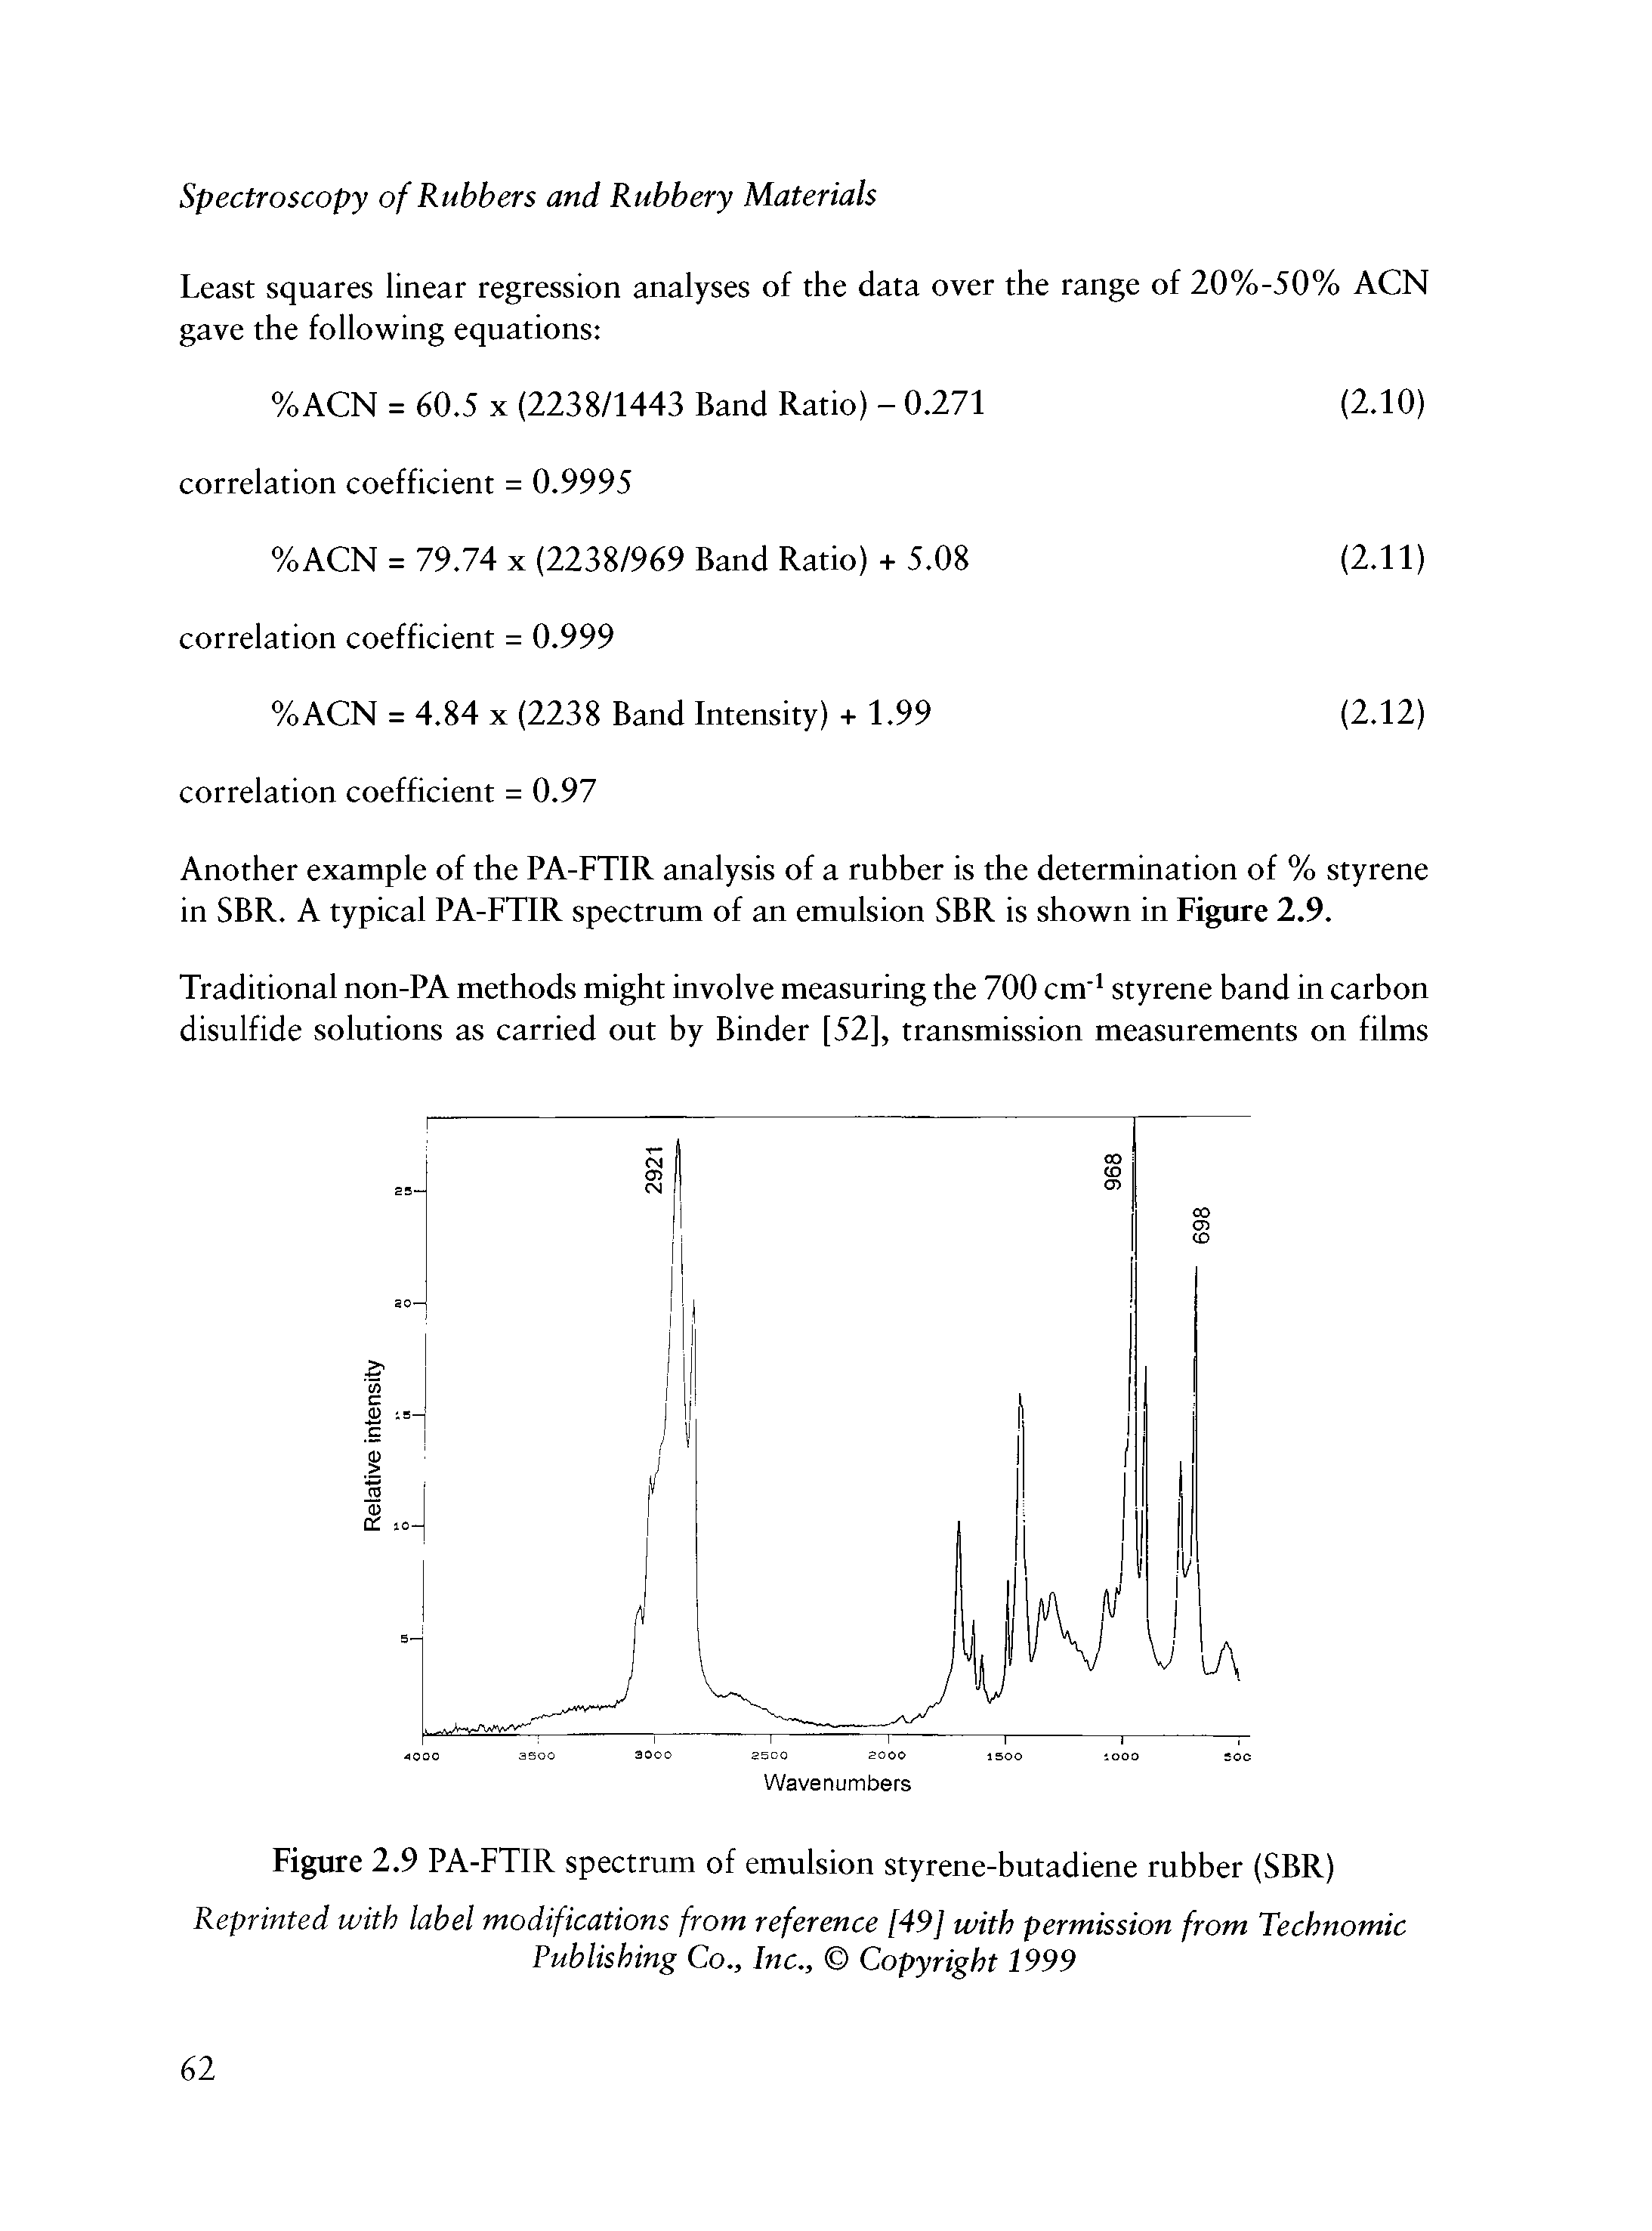 Figure 2.9 PA-FTIR spectrum of emulsion styrene-butadiene rubber (SBR)...